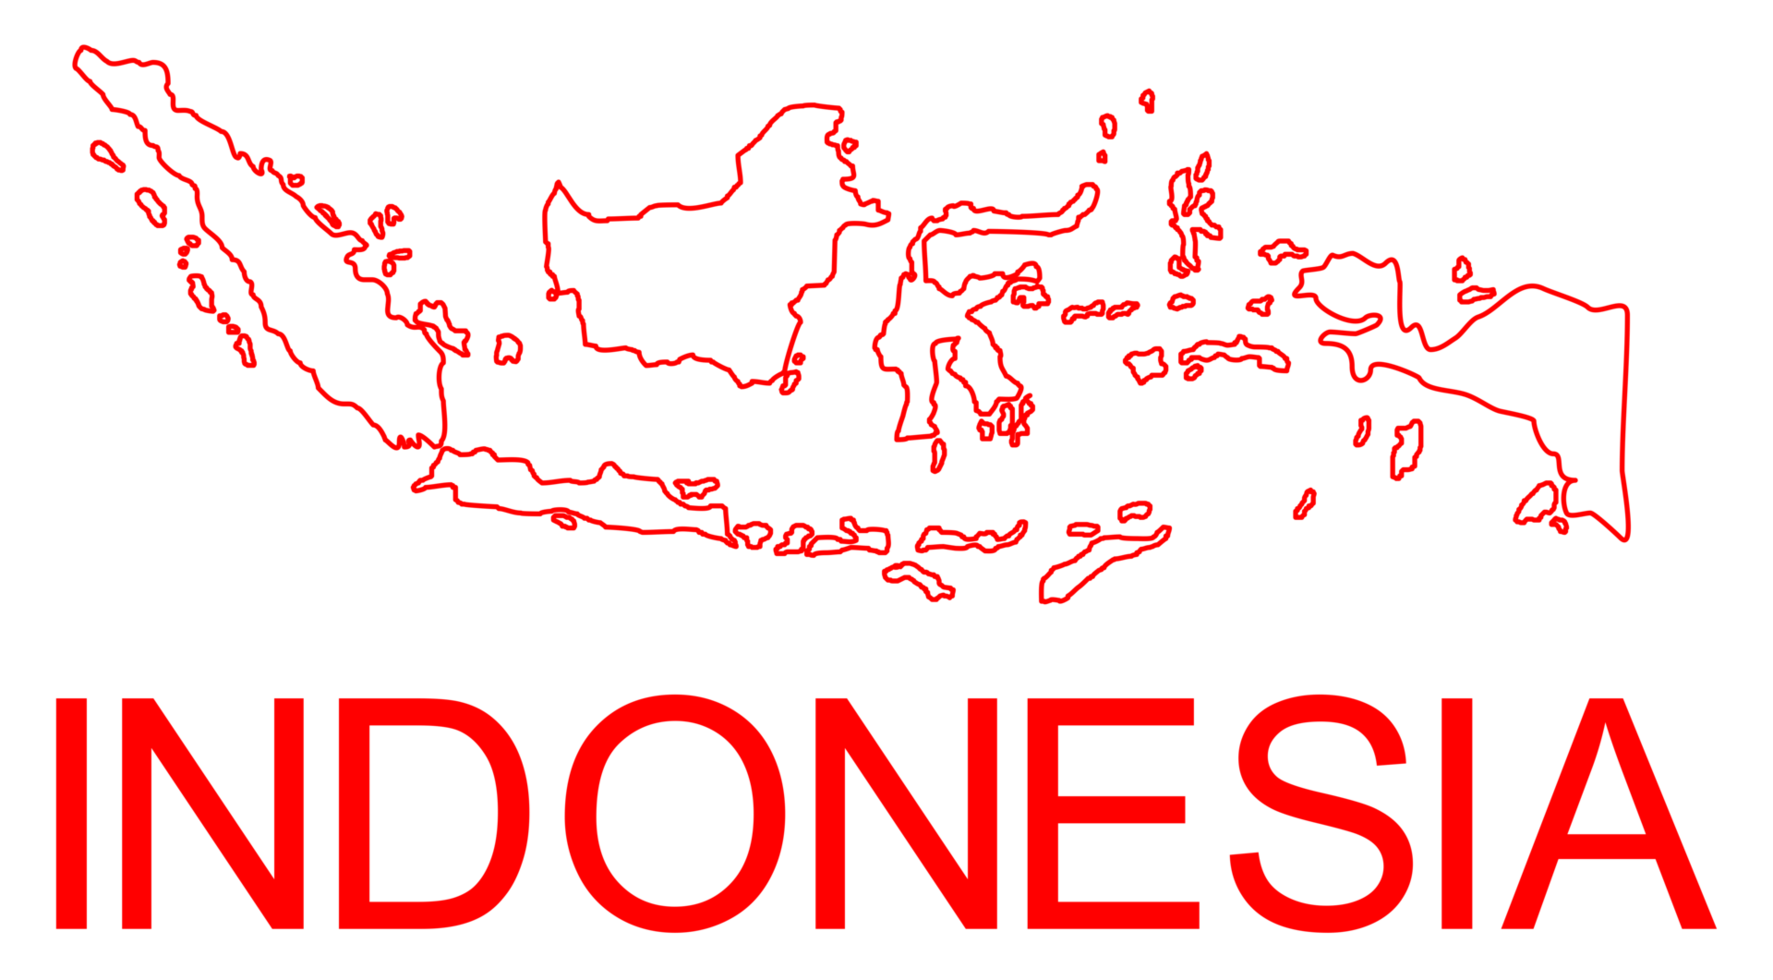 Indonesien-Karte für App, Kunstillustration, Website, Piktogramm, Infografik oder Grafikdesignelement. PNG-Format png